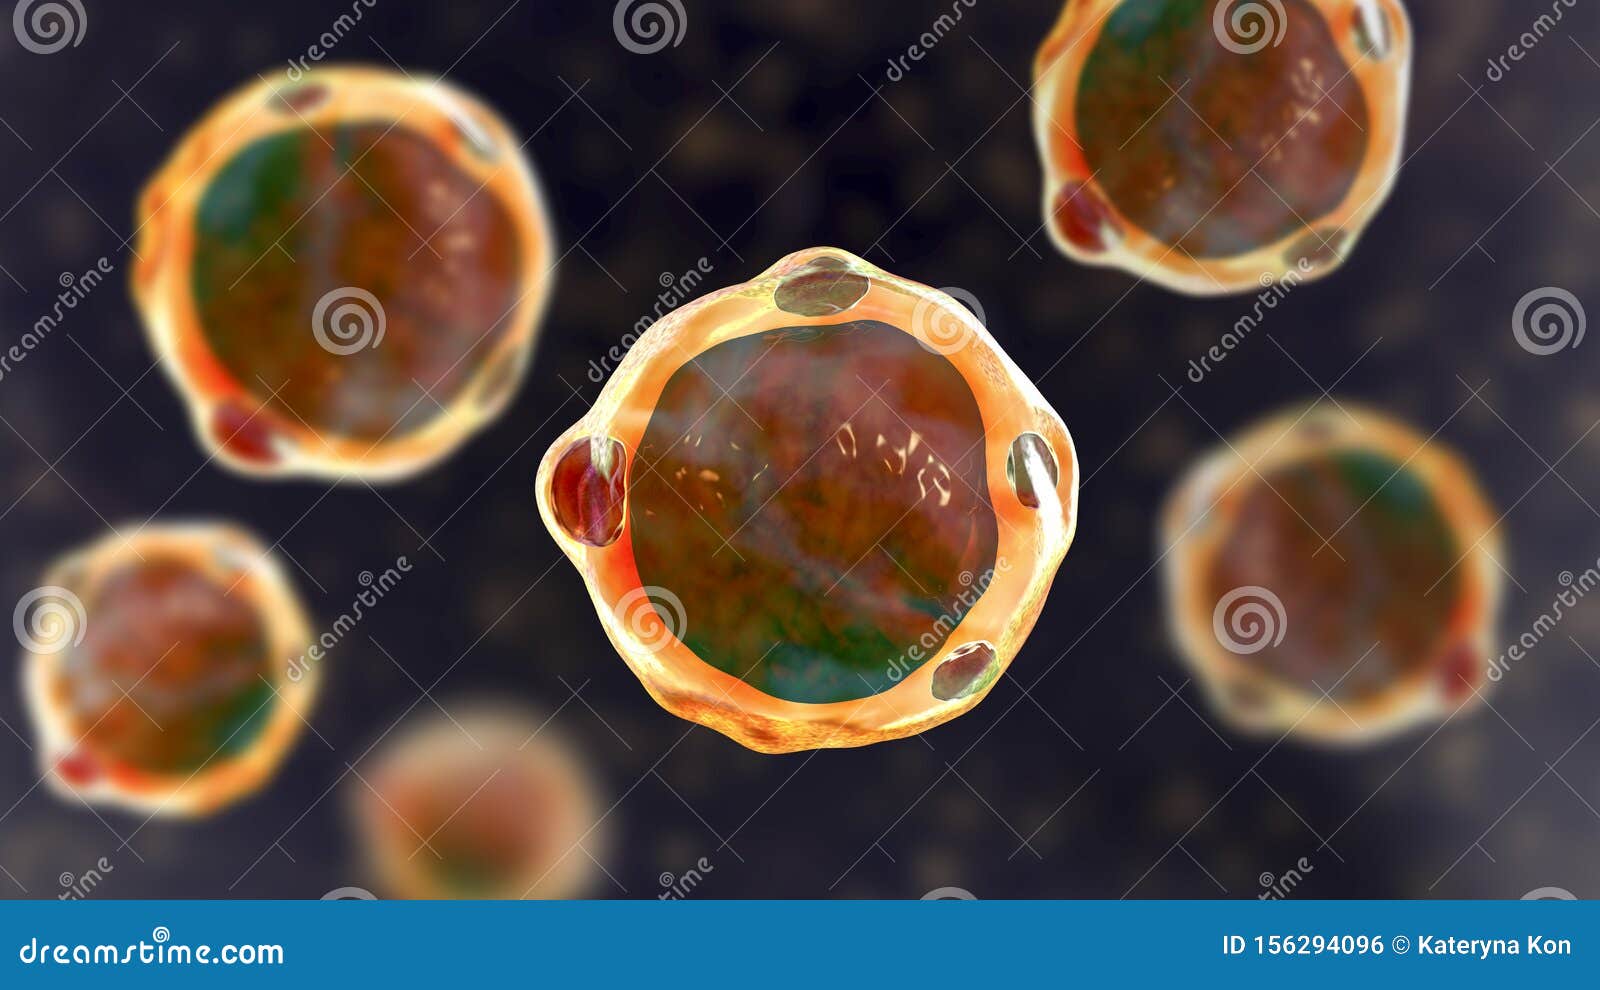 blastocystis hominis parazit